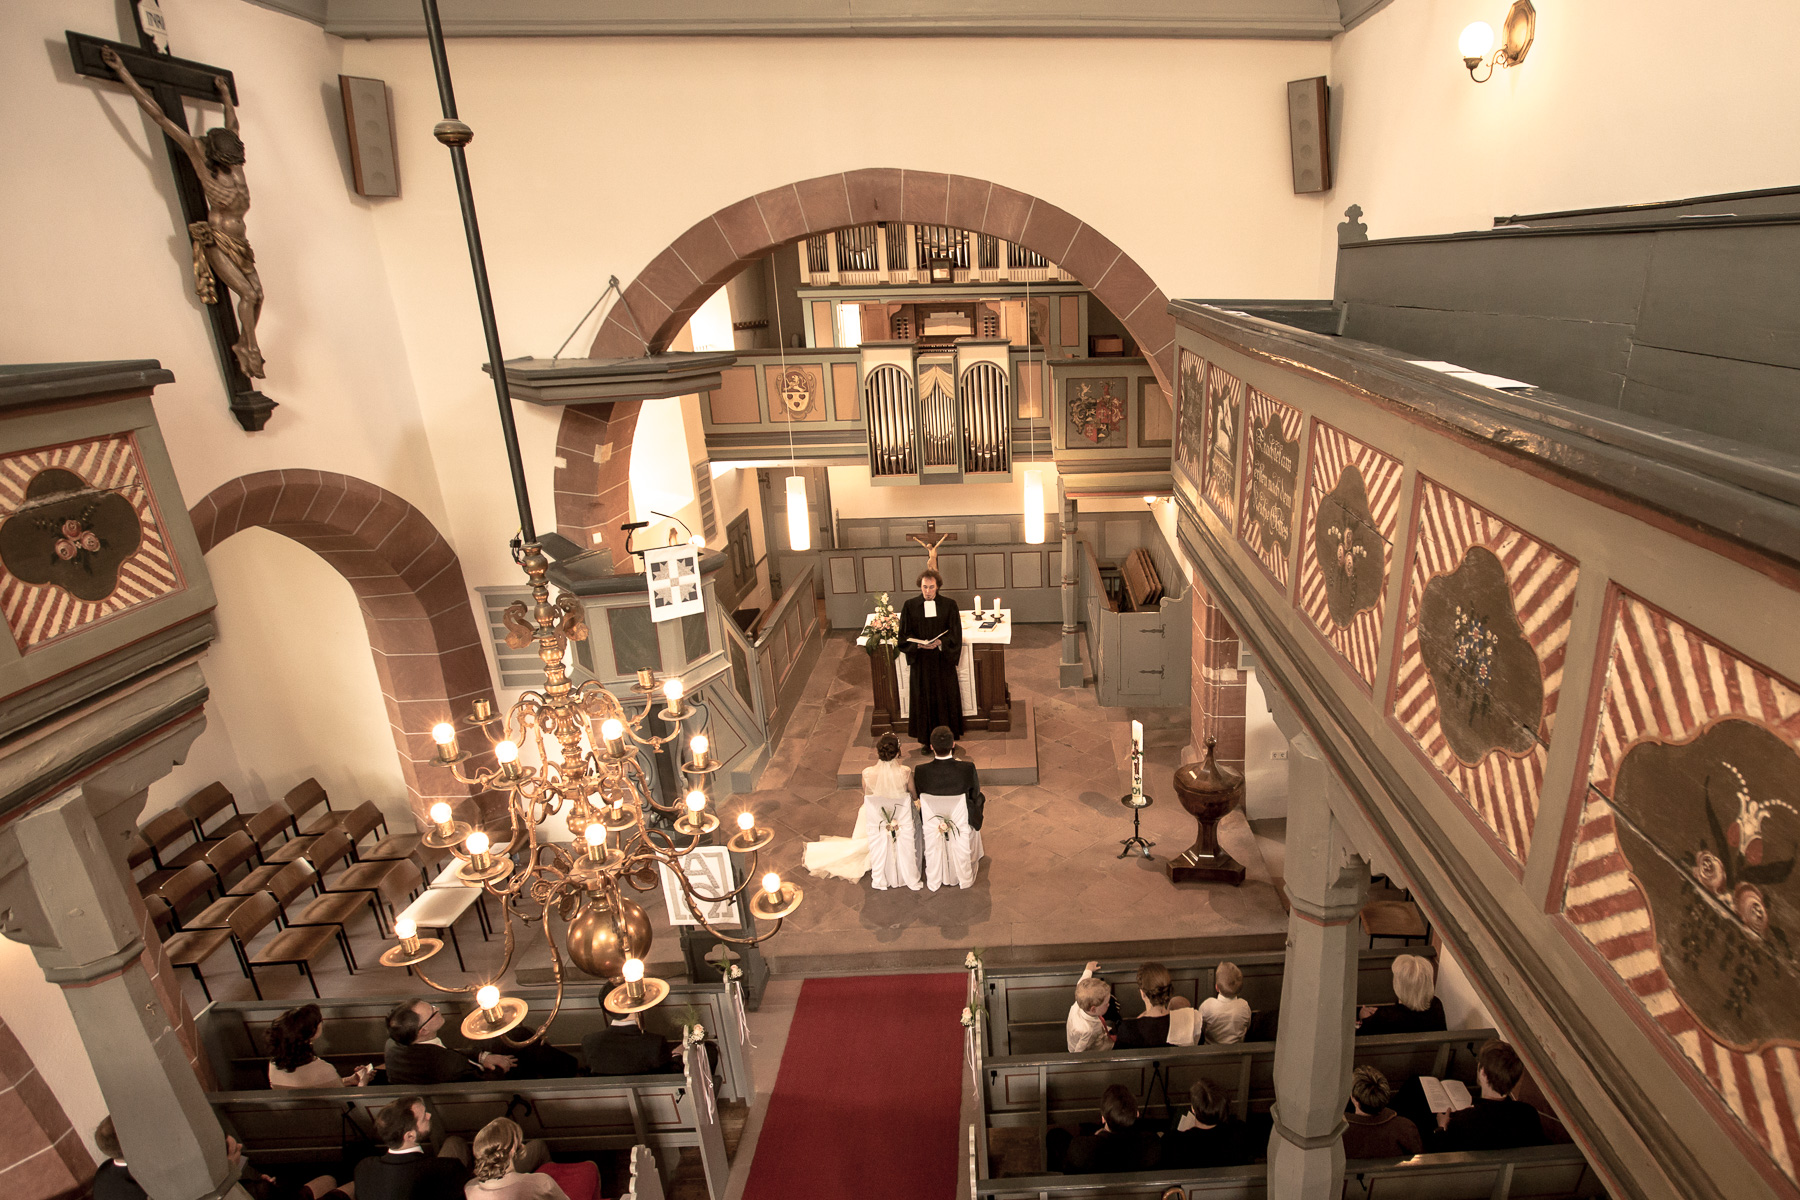 Ein Überblick des Kirchensaals von oben. Das Hochzeitspaar, der Priester vor ihnen und ein Teil der Gäste hinter ihnen sind erkennbar.